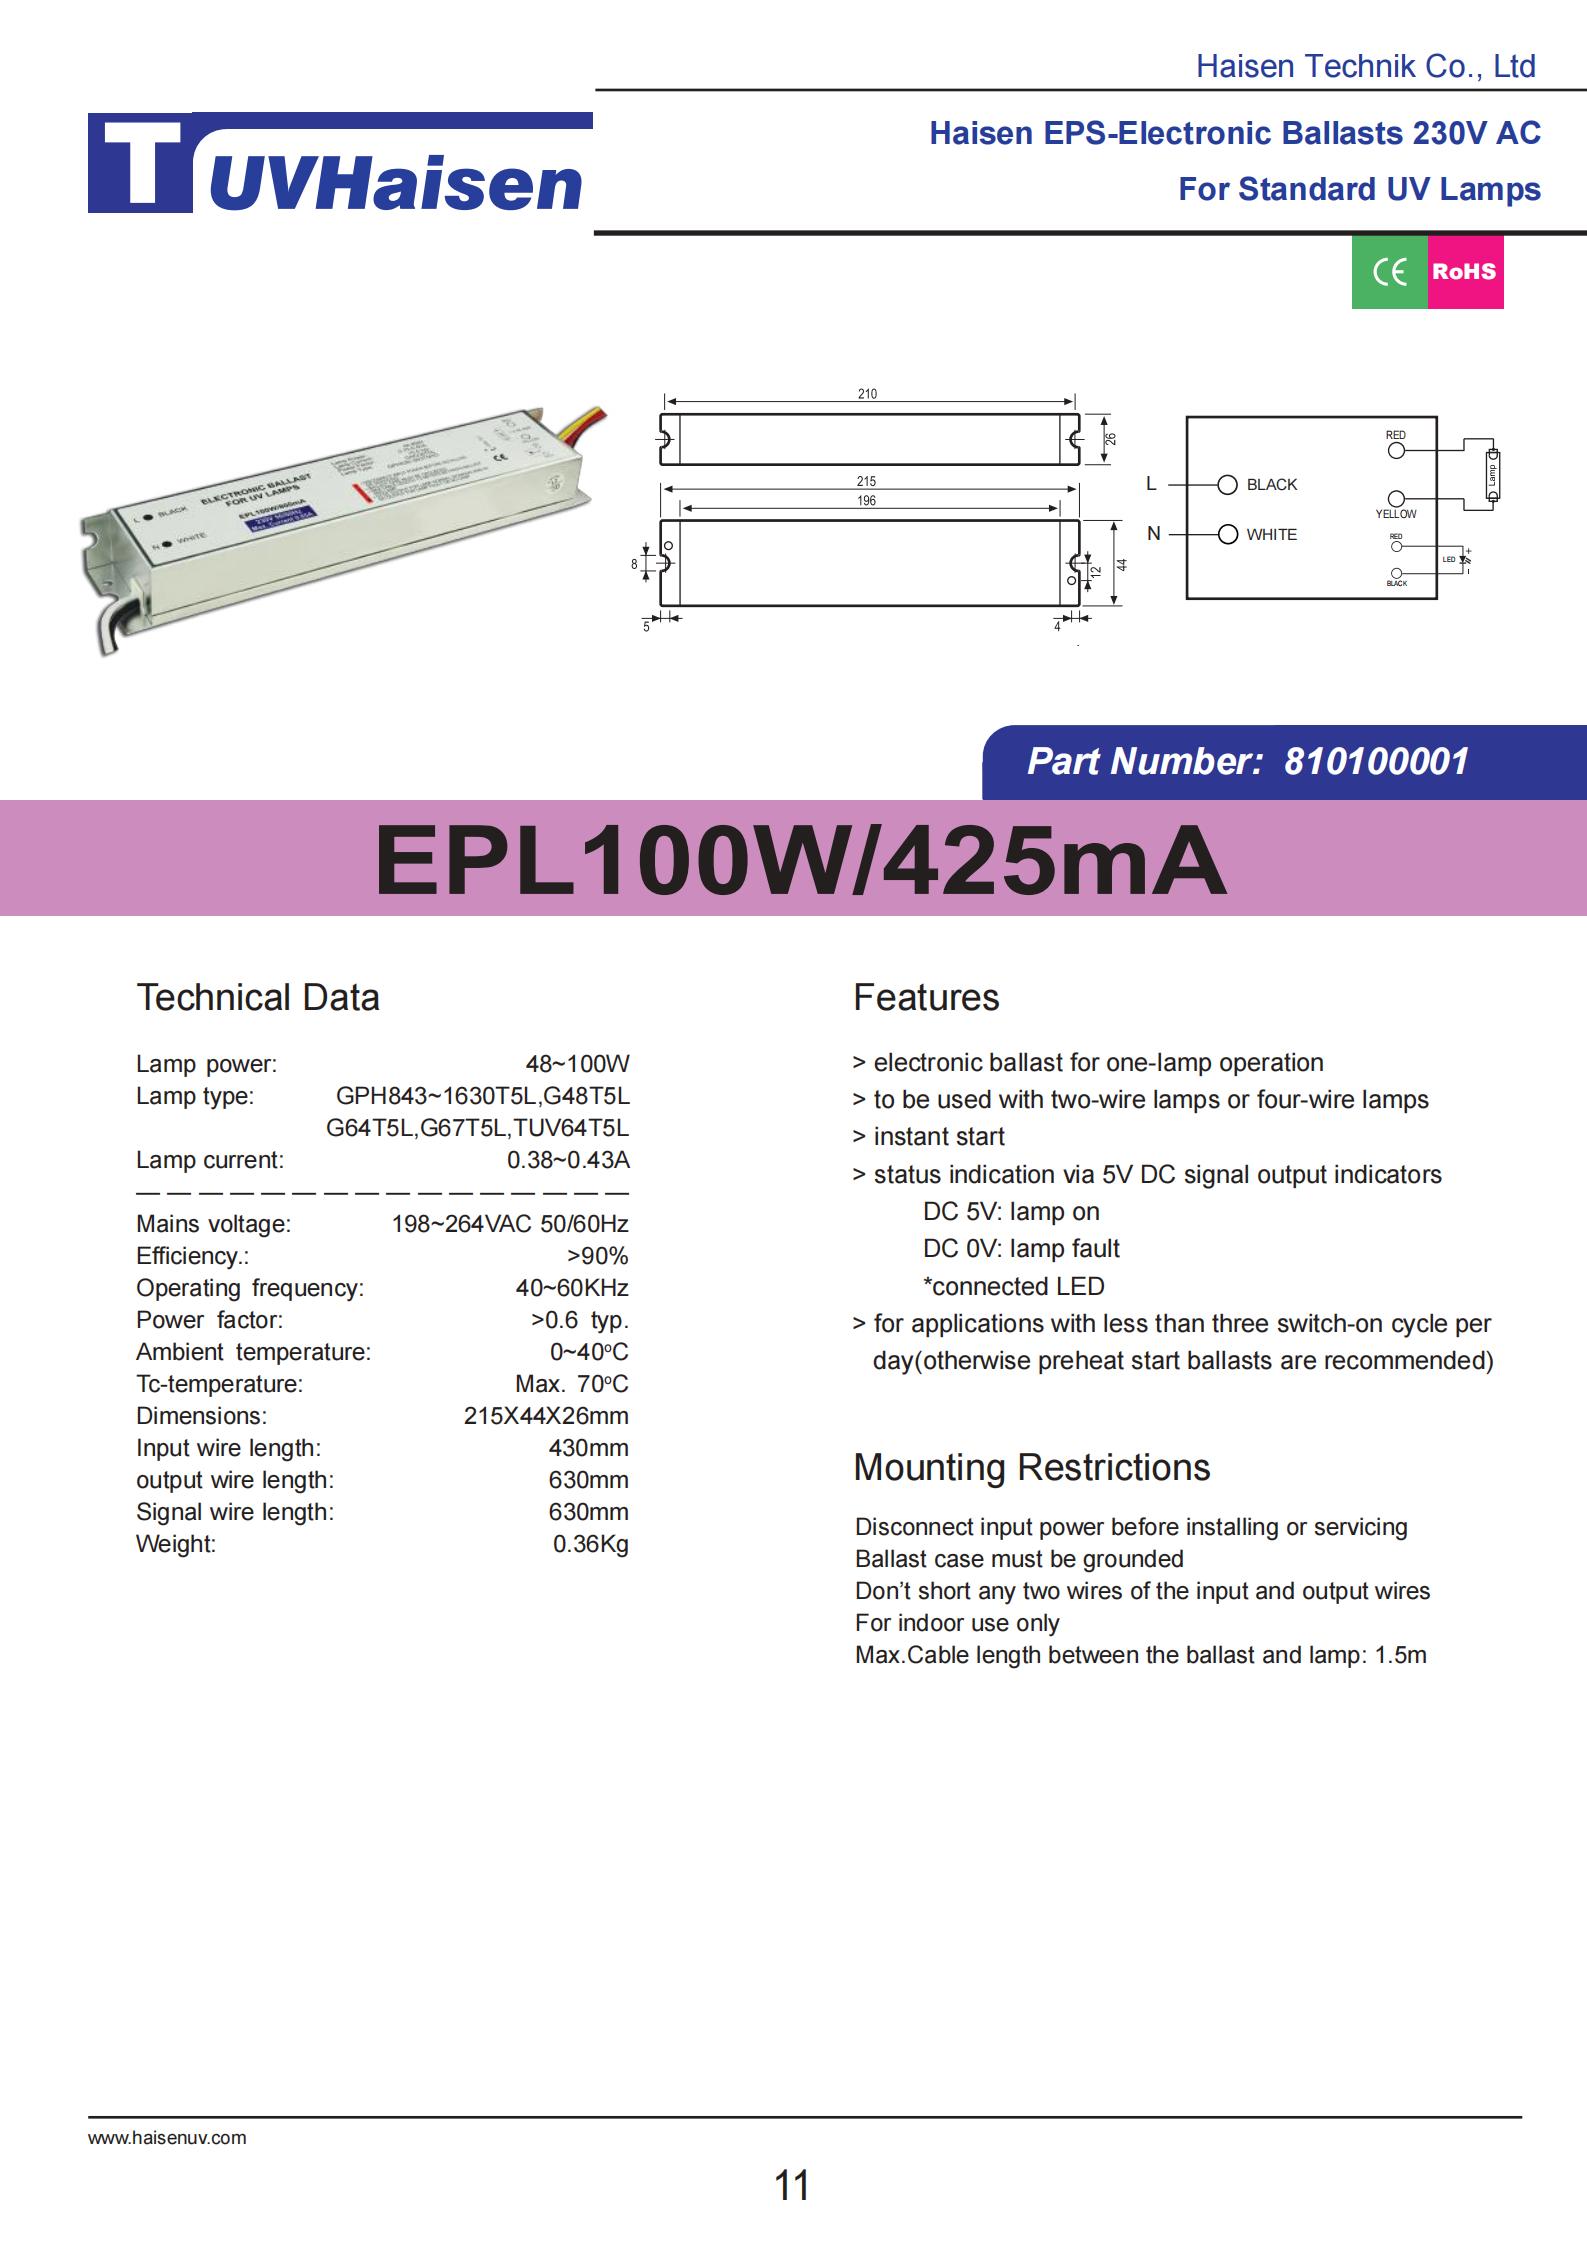  ultravoilet ballast EPL100W/425mA FOR UV LIGHTS